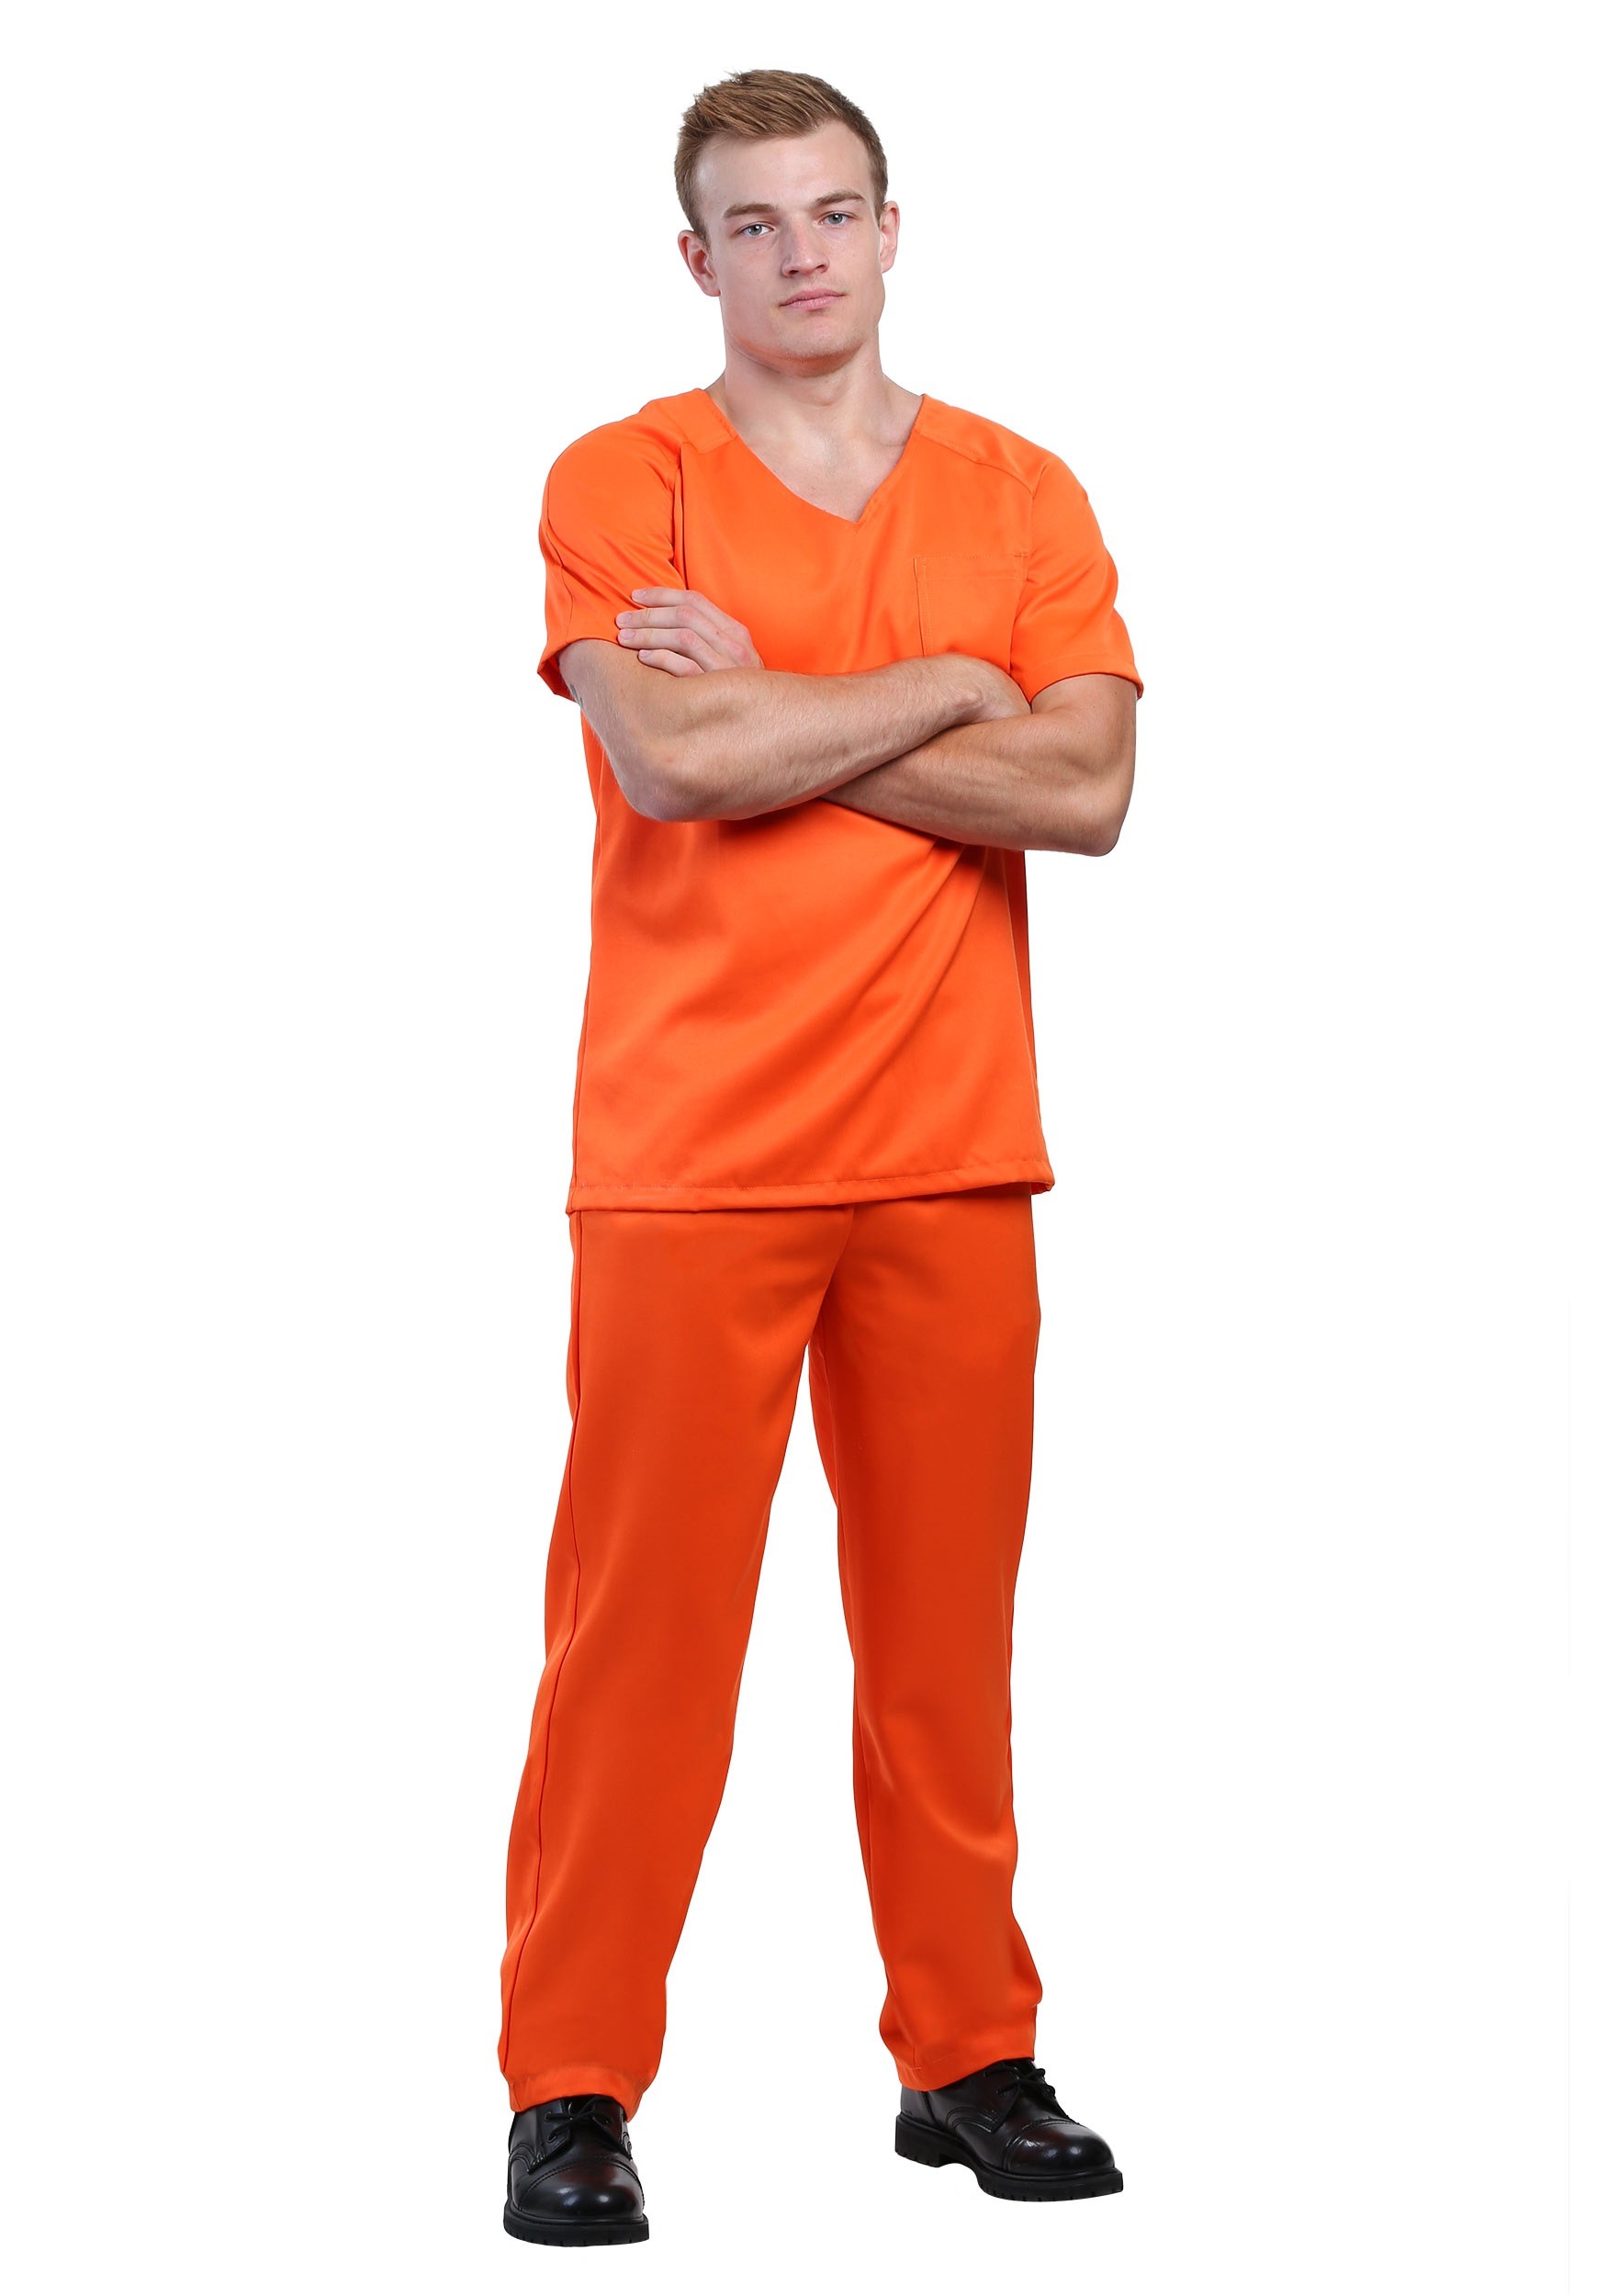 Photos - Fancy Dress FUN Costumes Men's Adult Orange Prisoner Orange FUN6716AD